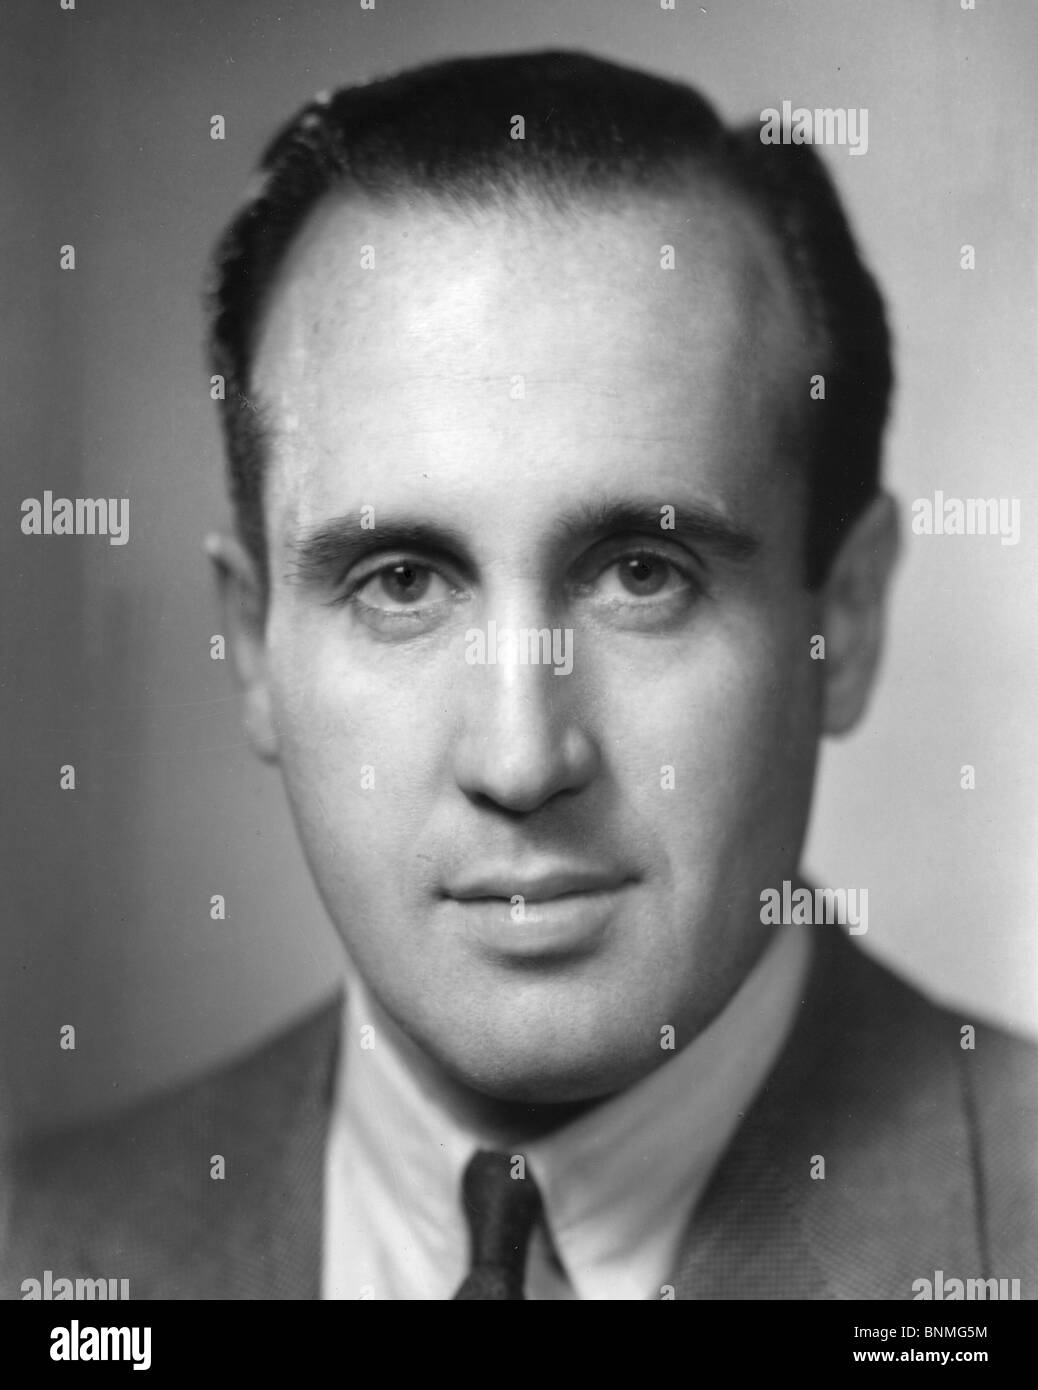 H J HEINZ (1908-87) American CEO de la empresa de alimentos Heinz J H aquí en 1948 Foto de stock